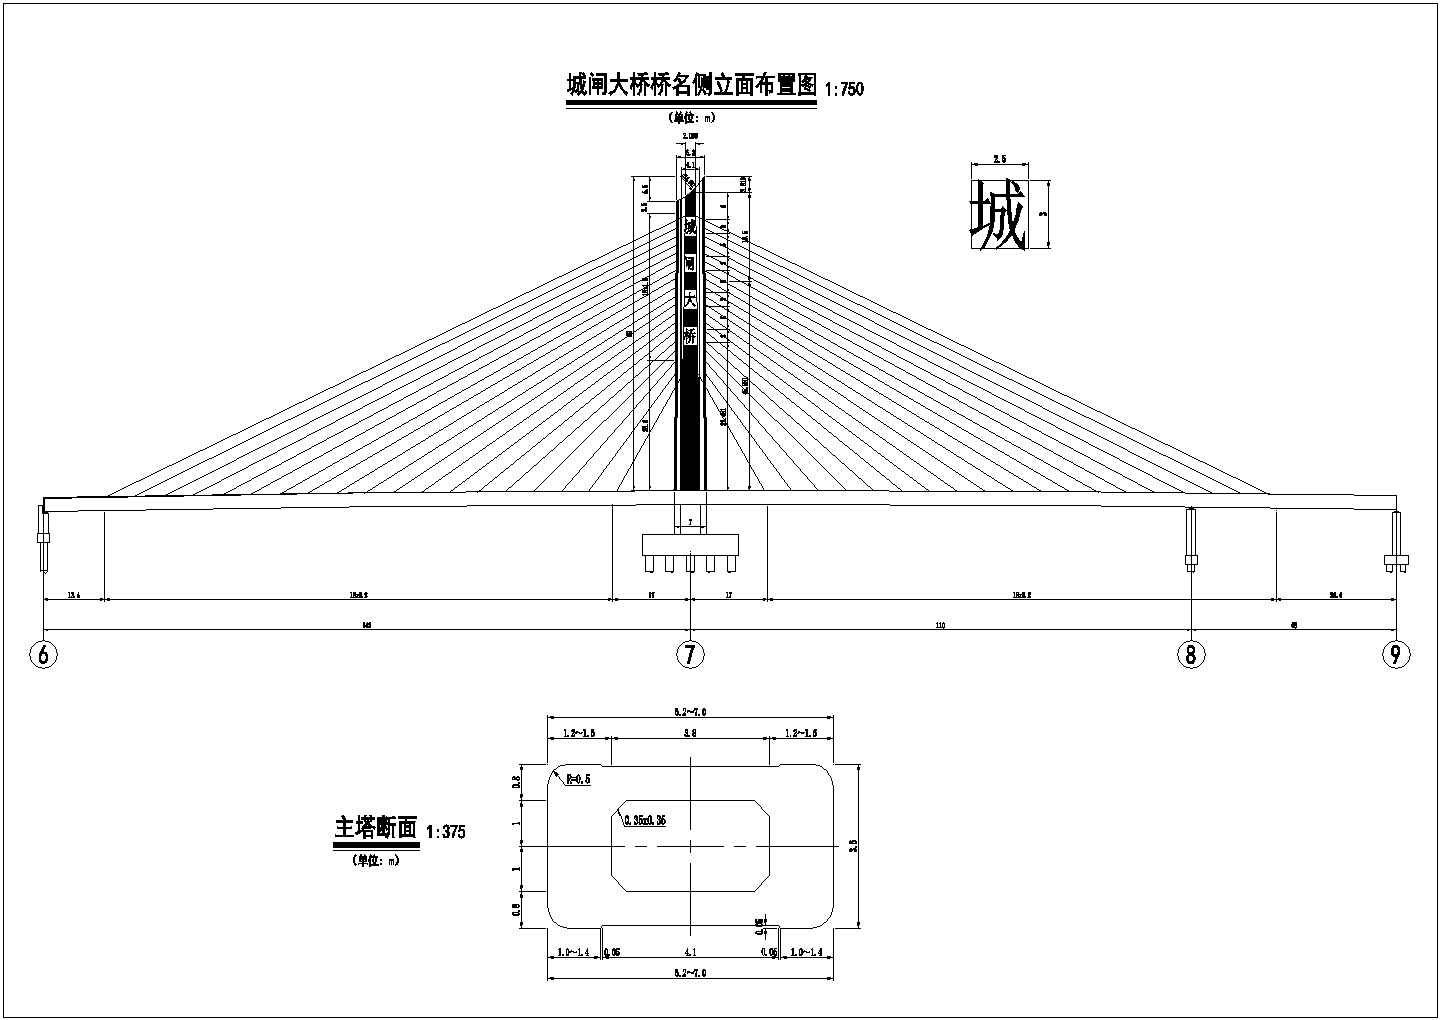 596米南通市城闸大桥独塔中央索面斜拉桥设计施工图